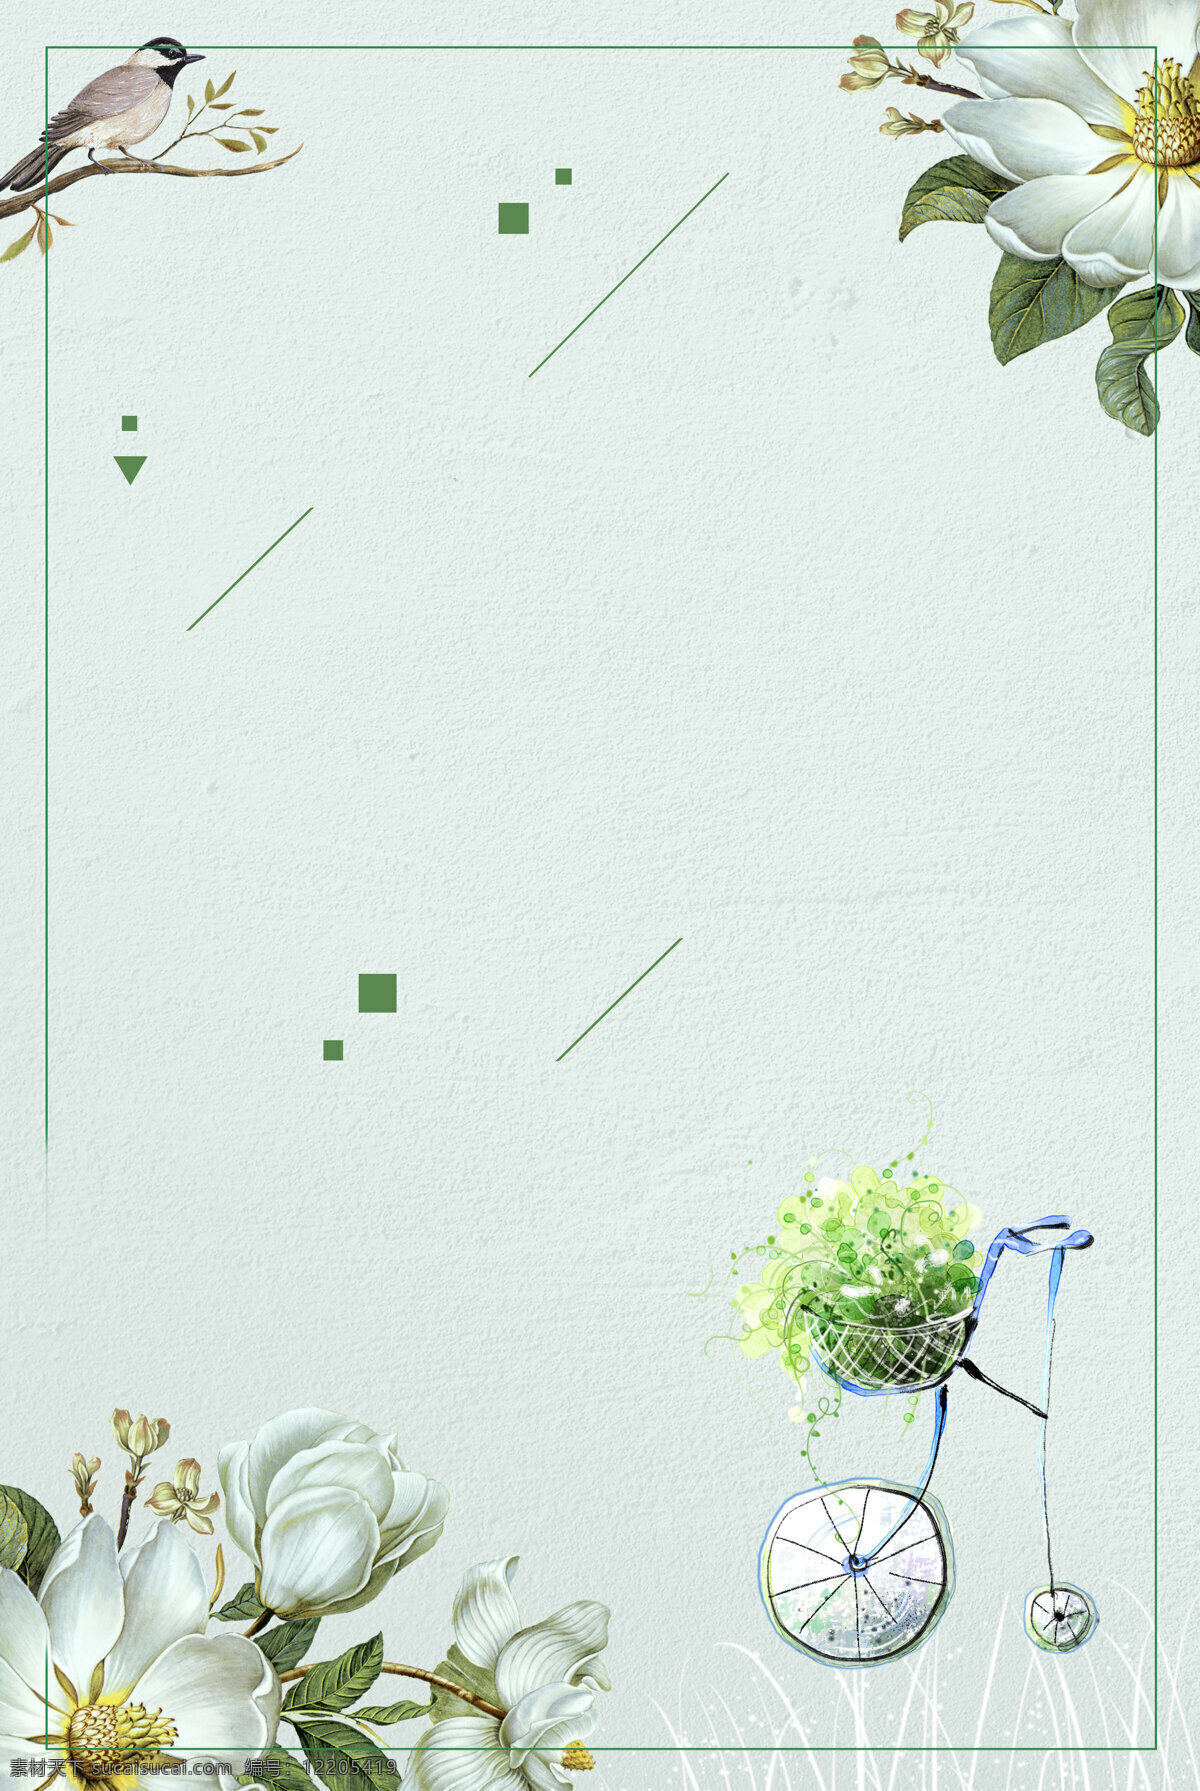 小 清新 单车 花鸟 图 背景 小清新 边框 春天 广告背景 绿色线条 花篮 白色花朵